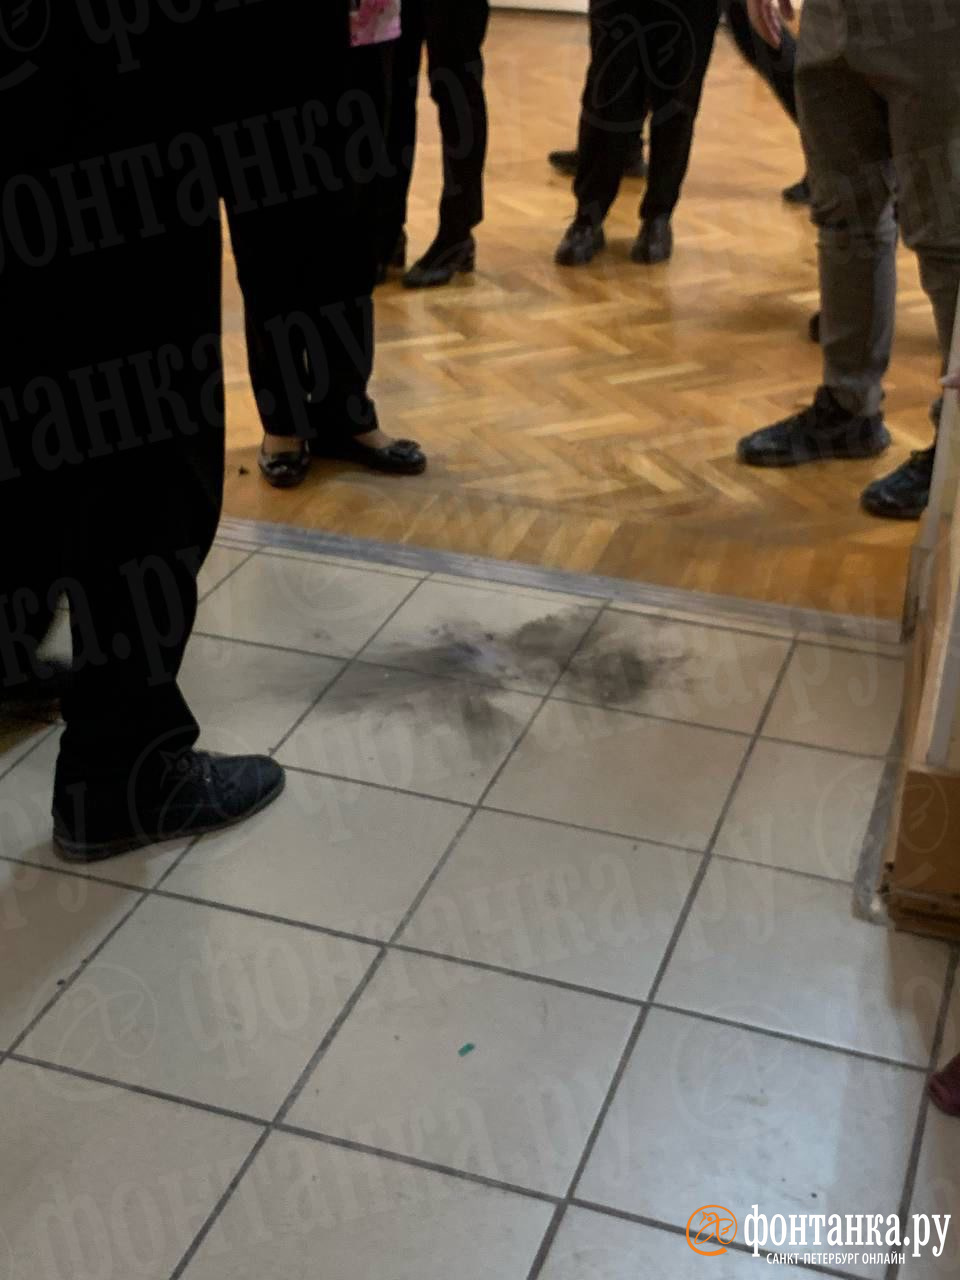 Страйкбольная граната взорвалась в руках у мальчика в школе в центре Петербурга